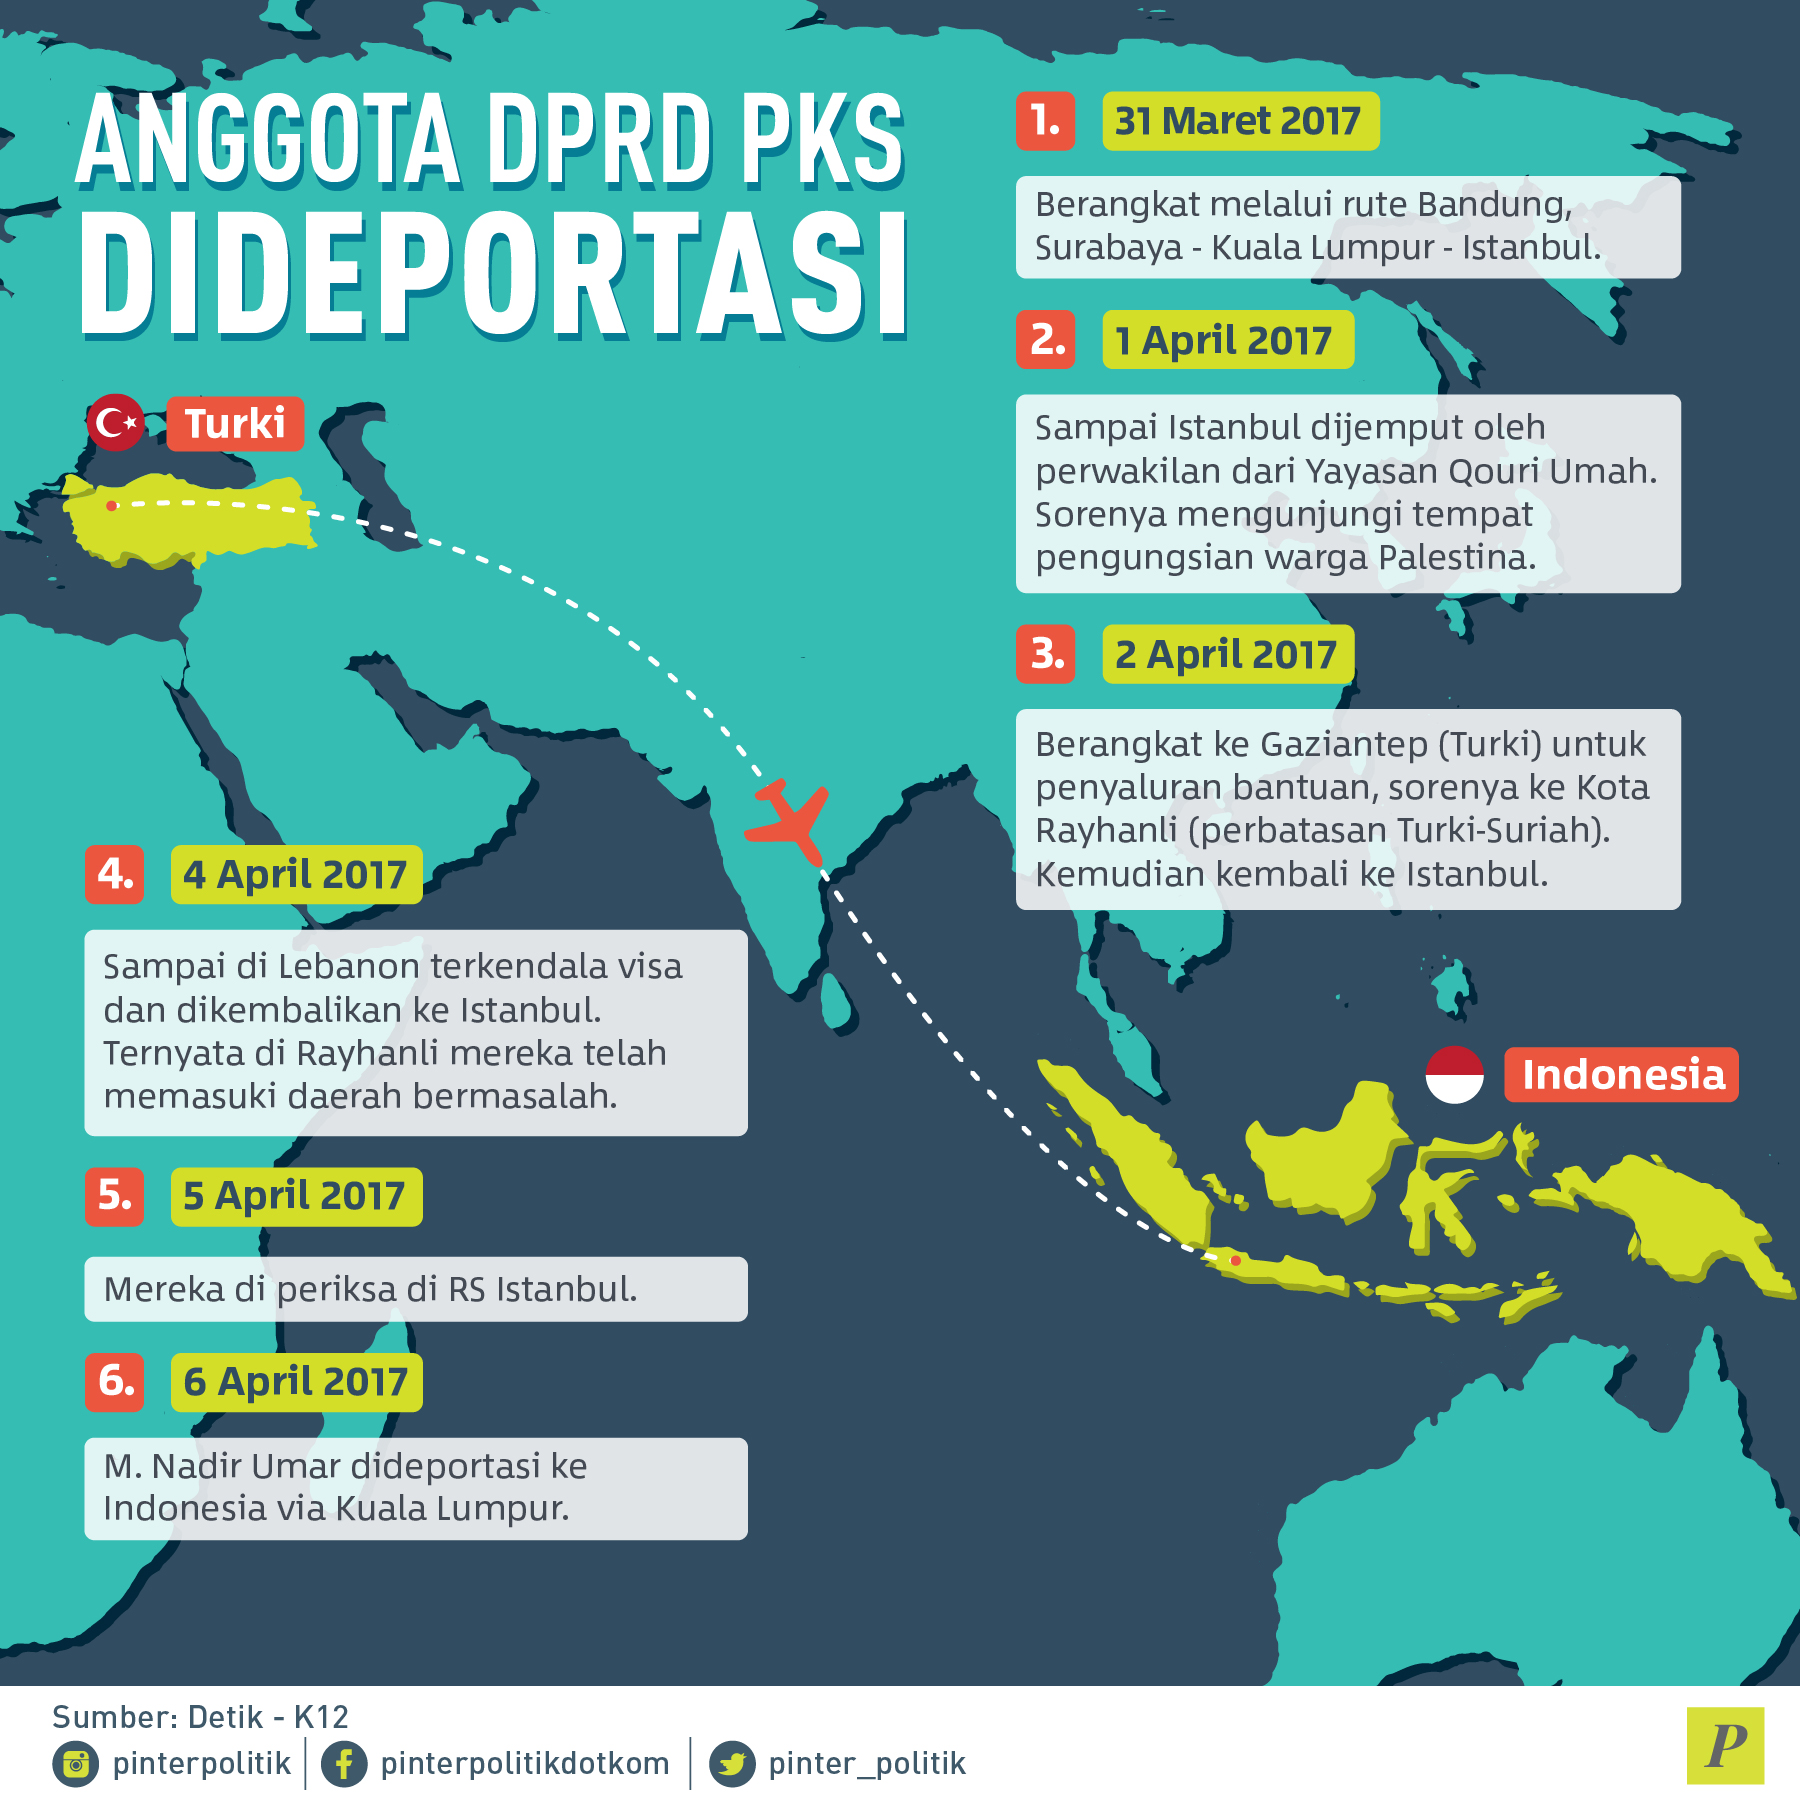 anggota DPRD PKS di deportasi